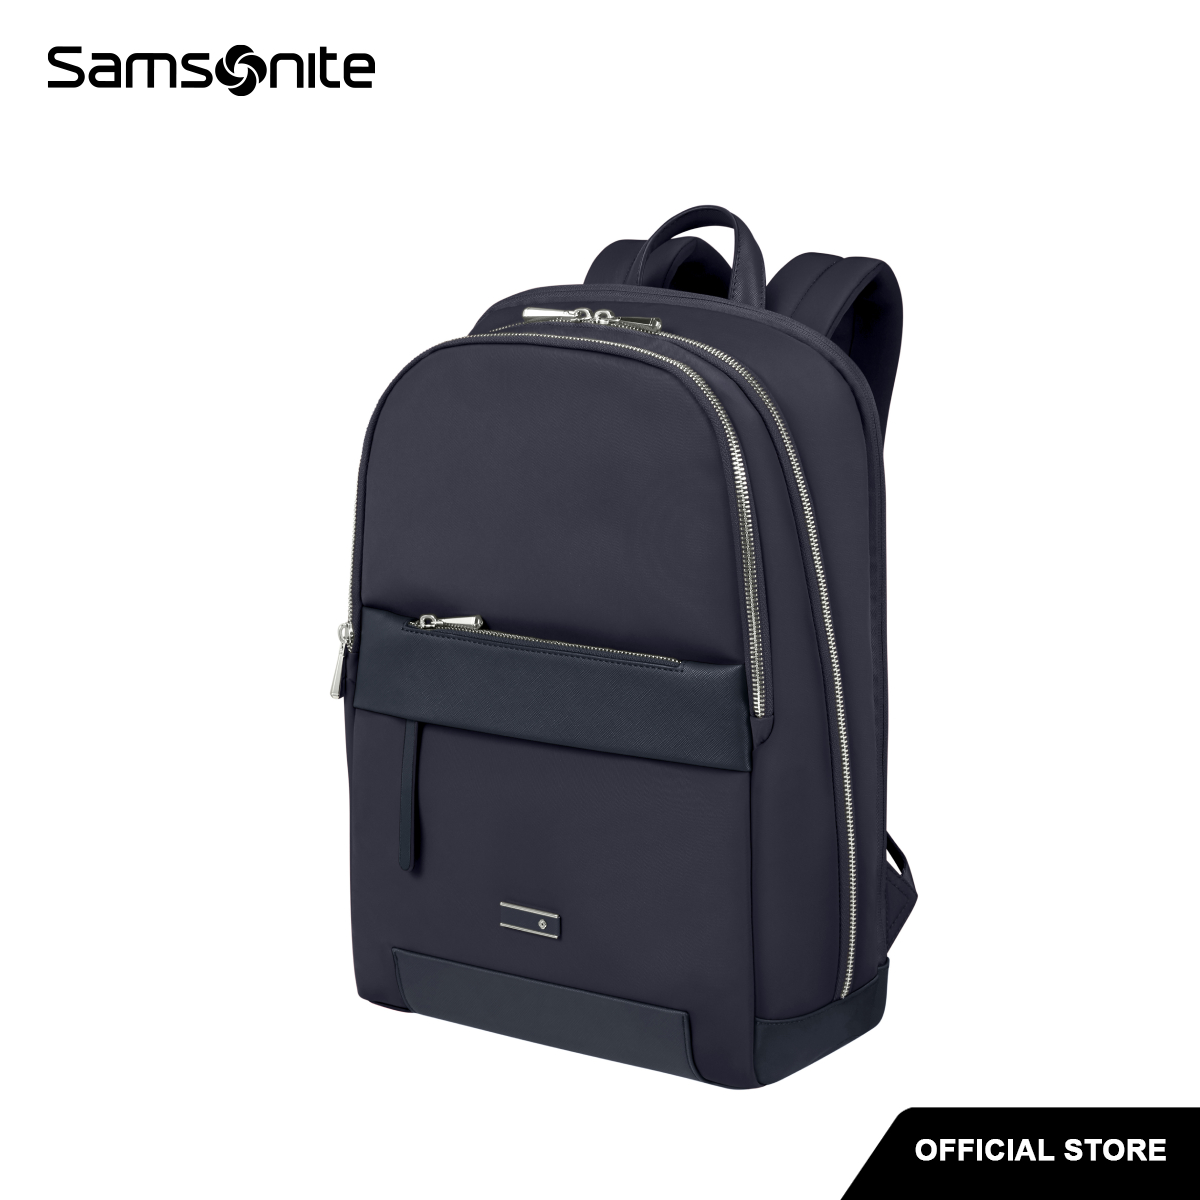 Samsonite Zalia 2.0 Laptop Handtasche 41 cm - midnight blue